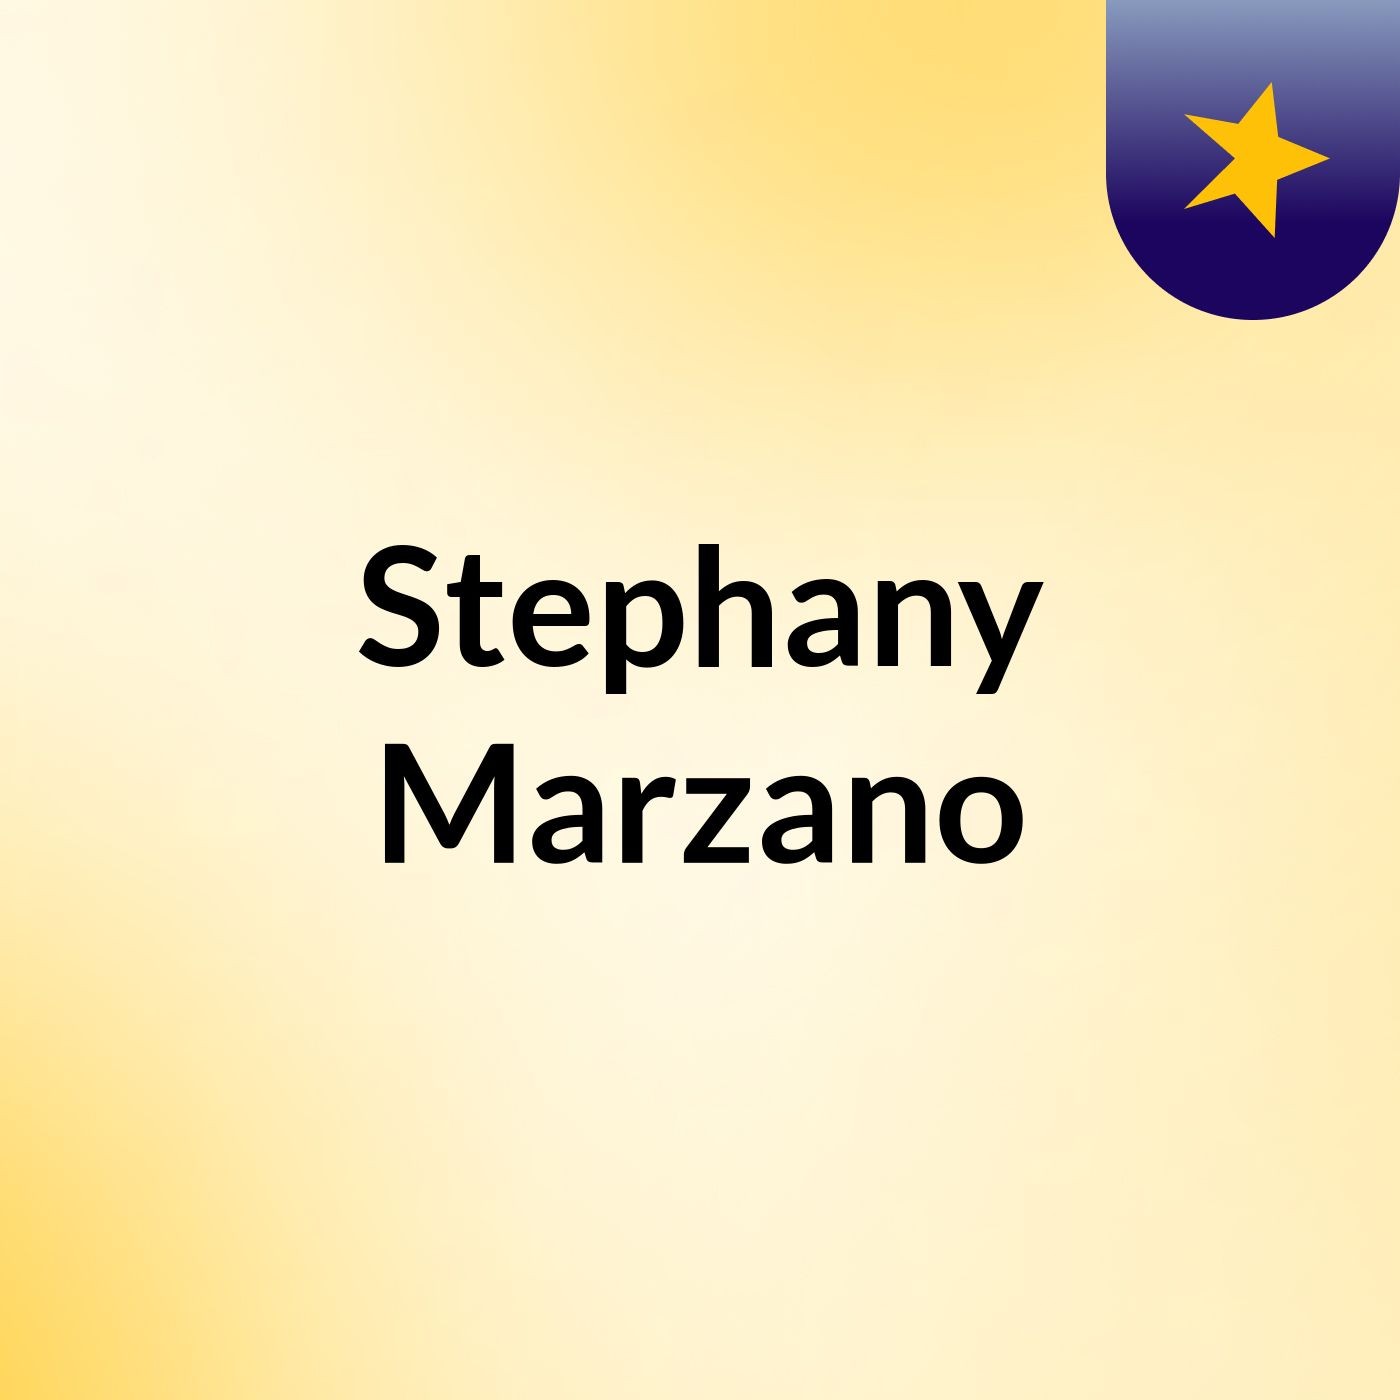 Stephany Marzano